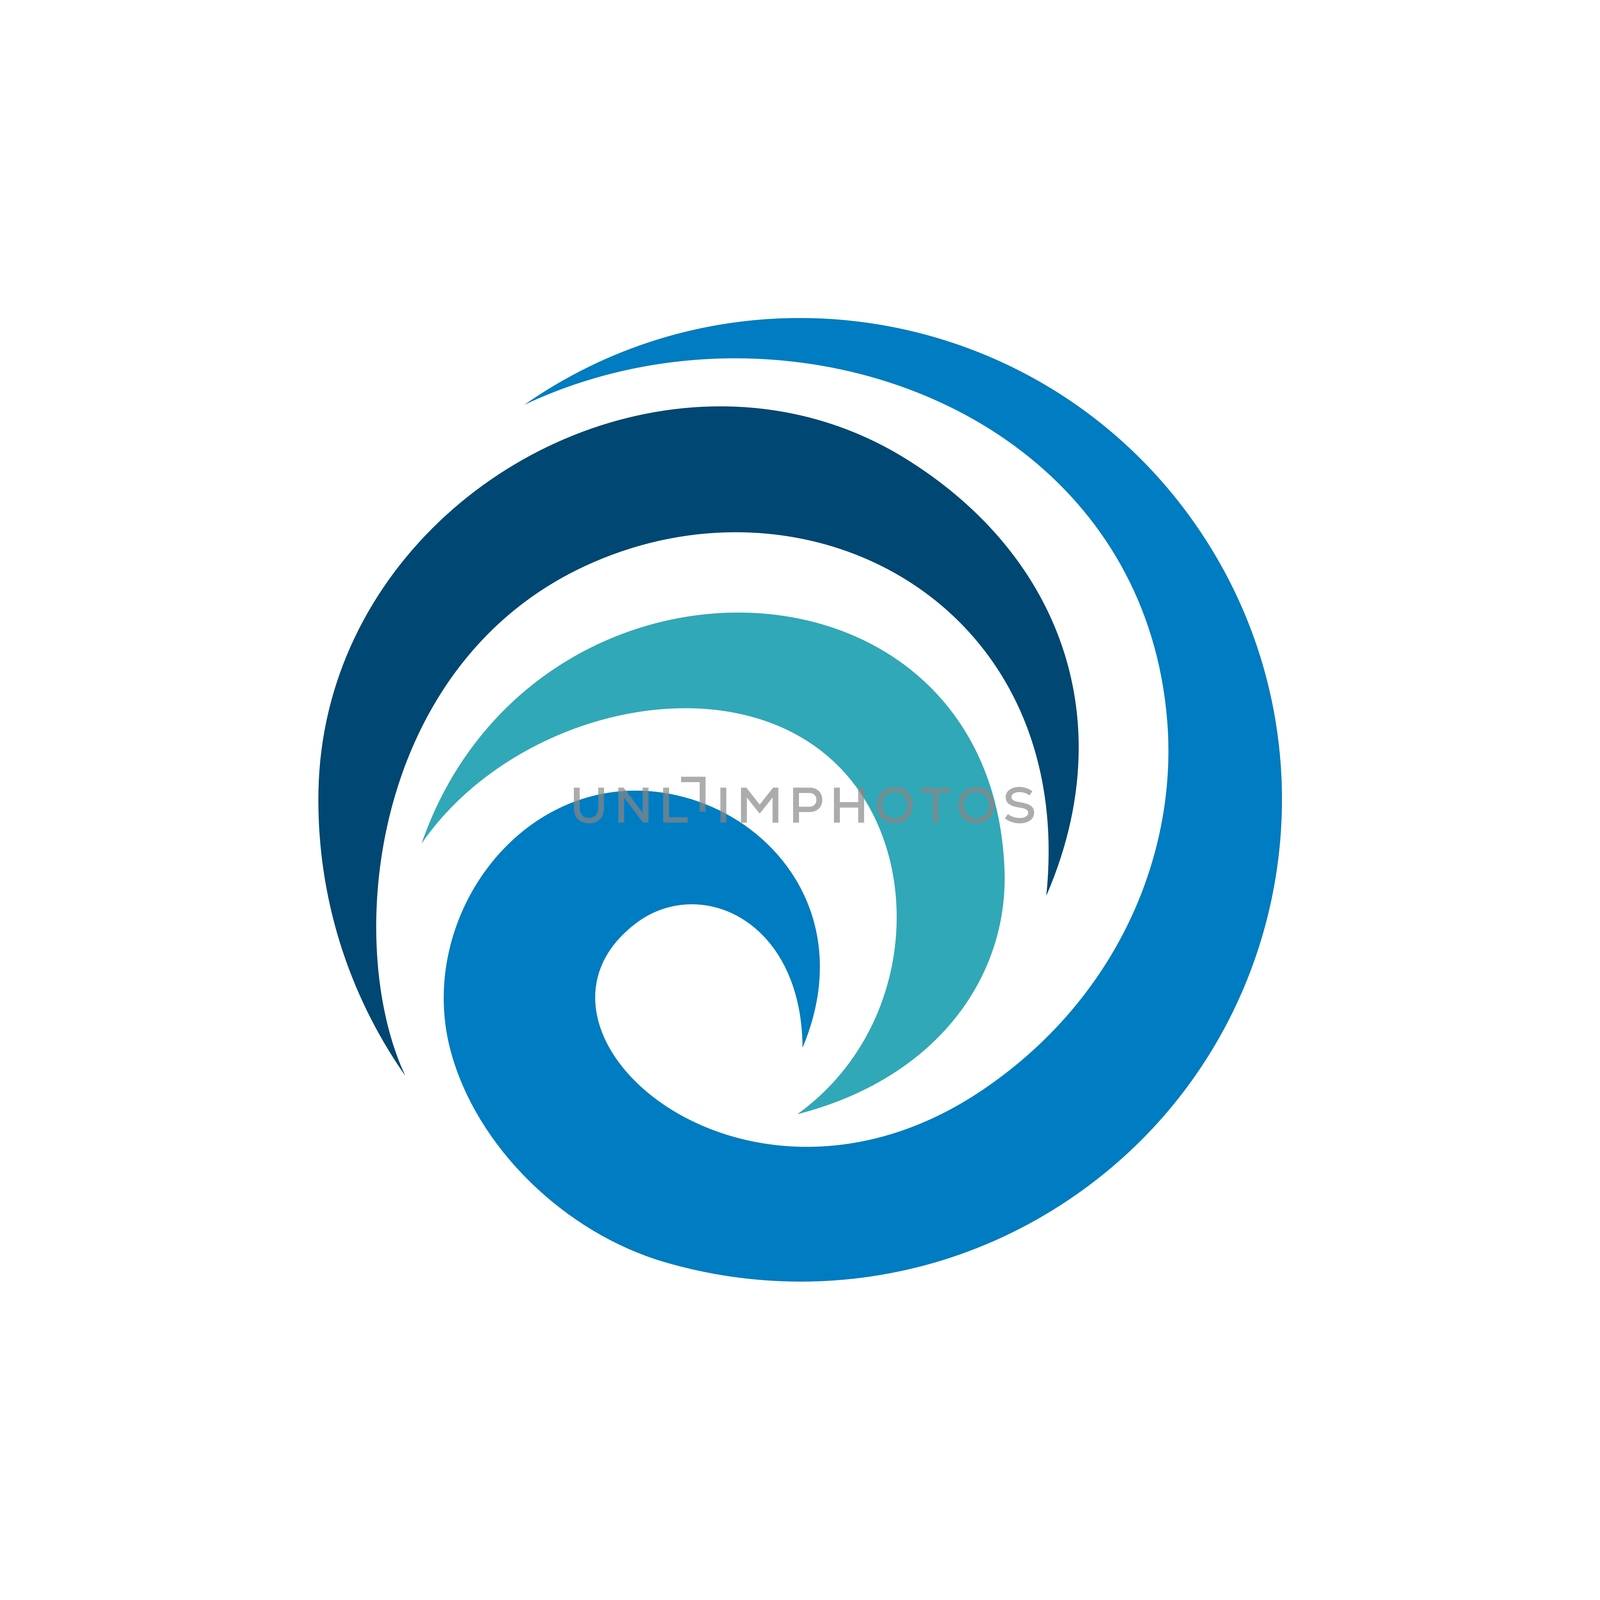 Abstract Blue Swirl Tribal Sphere Logo Template Illustration Design. Vector EPS 10.